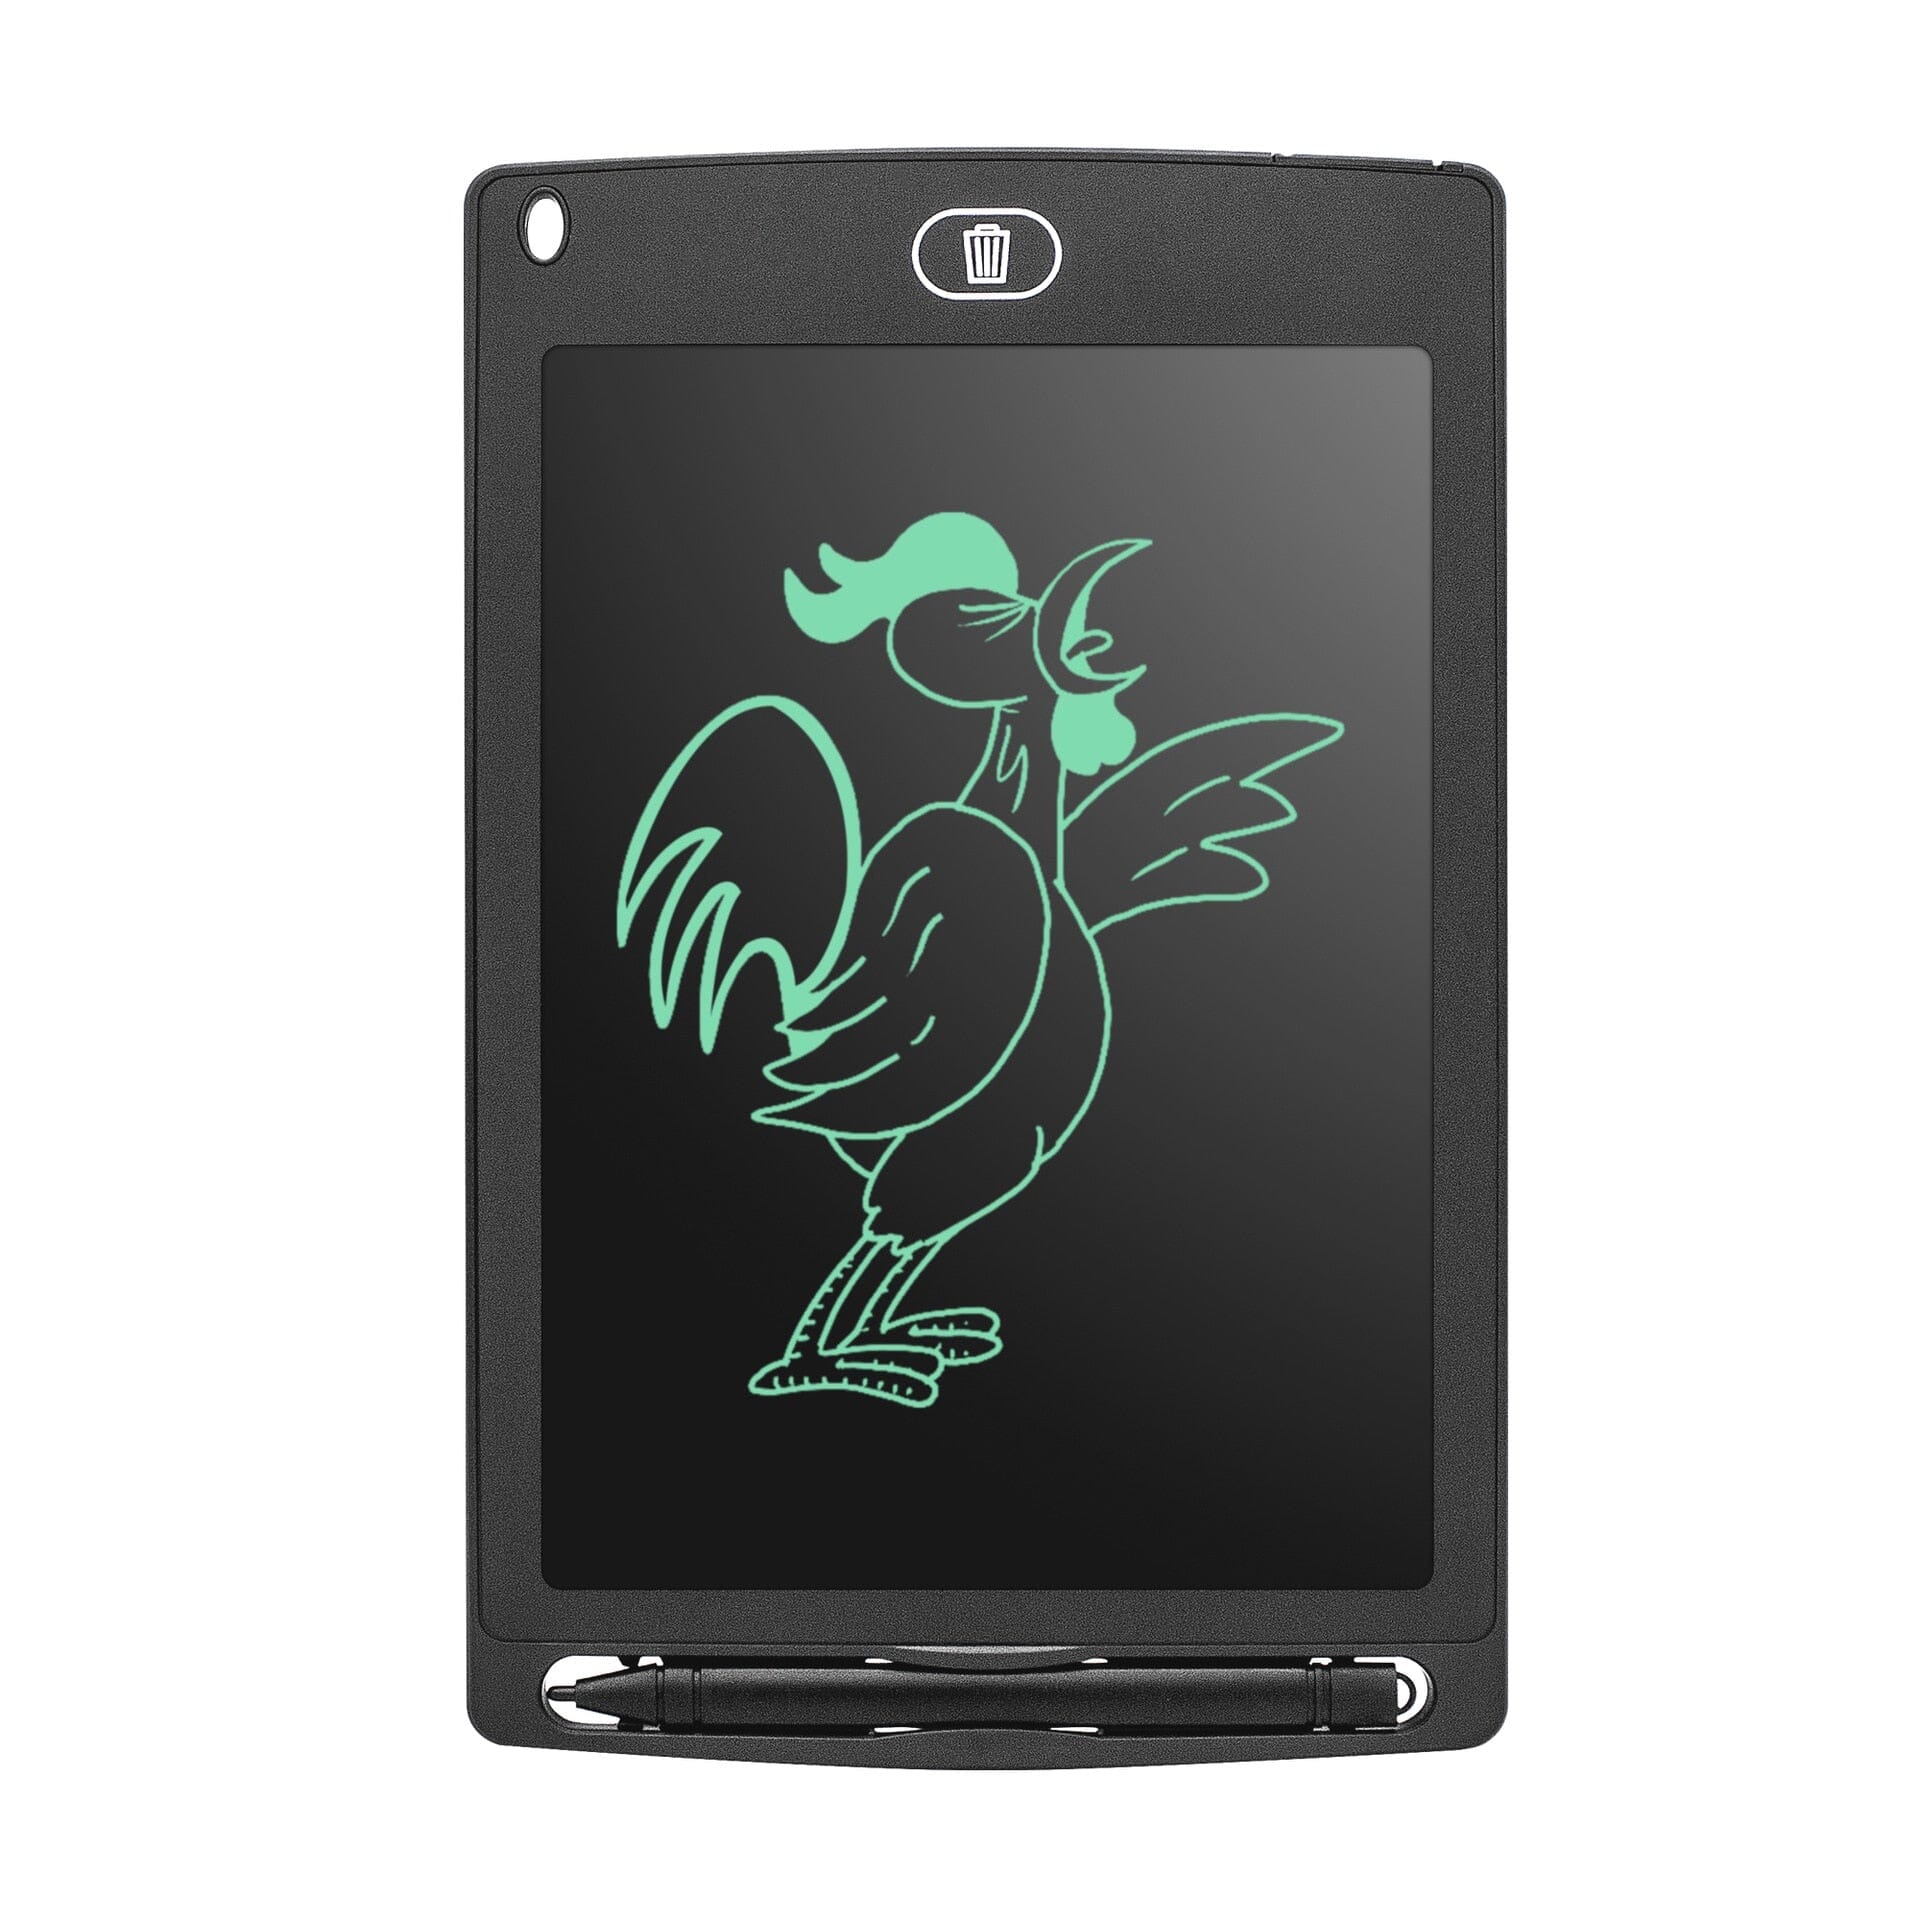 Tablet Inova Criatividade - Desperte a imaginação do seu filho com essa lousa mágica!